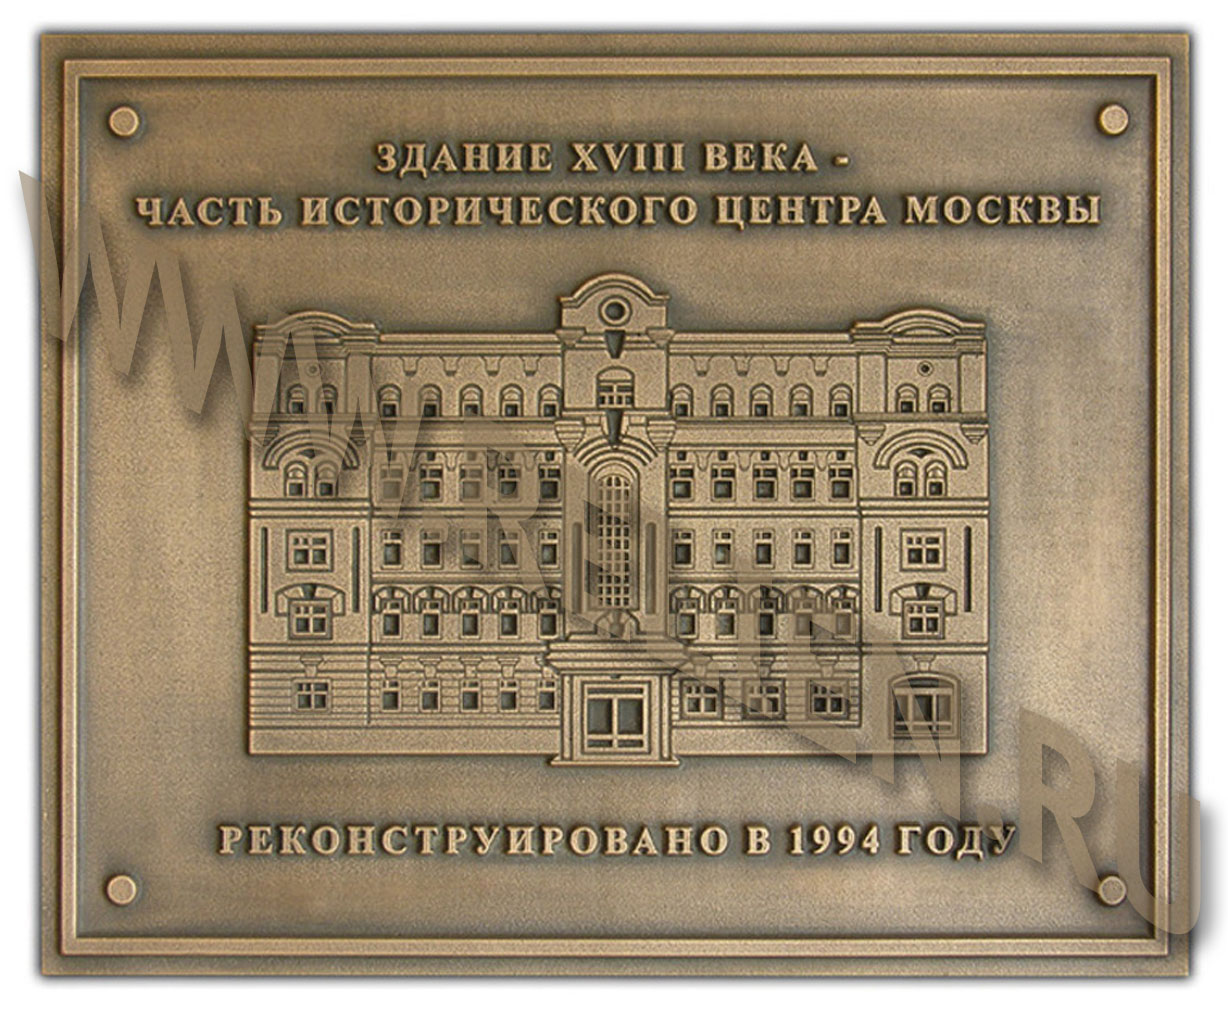 Мемориальная доска из бронзы с изображением исторического здания 18-го века в центре Москвы. Бронзовая мемориальная памятная доска (охранная табличка) изготовлена по технологии художественного литья для памятника архитектуры, изображенного на ней.